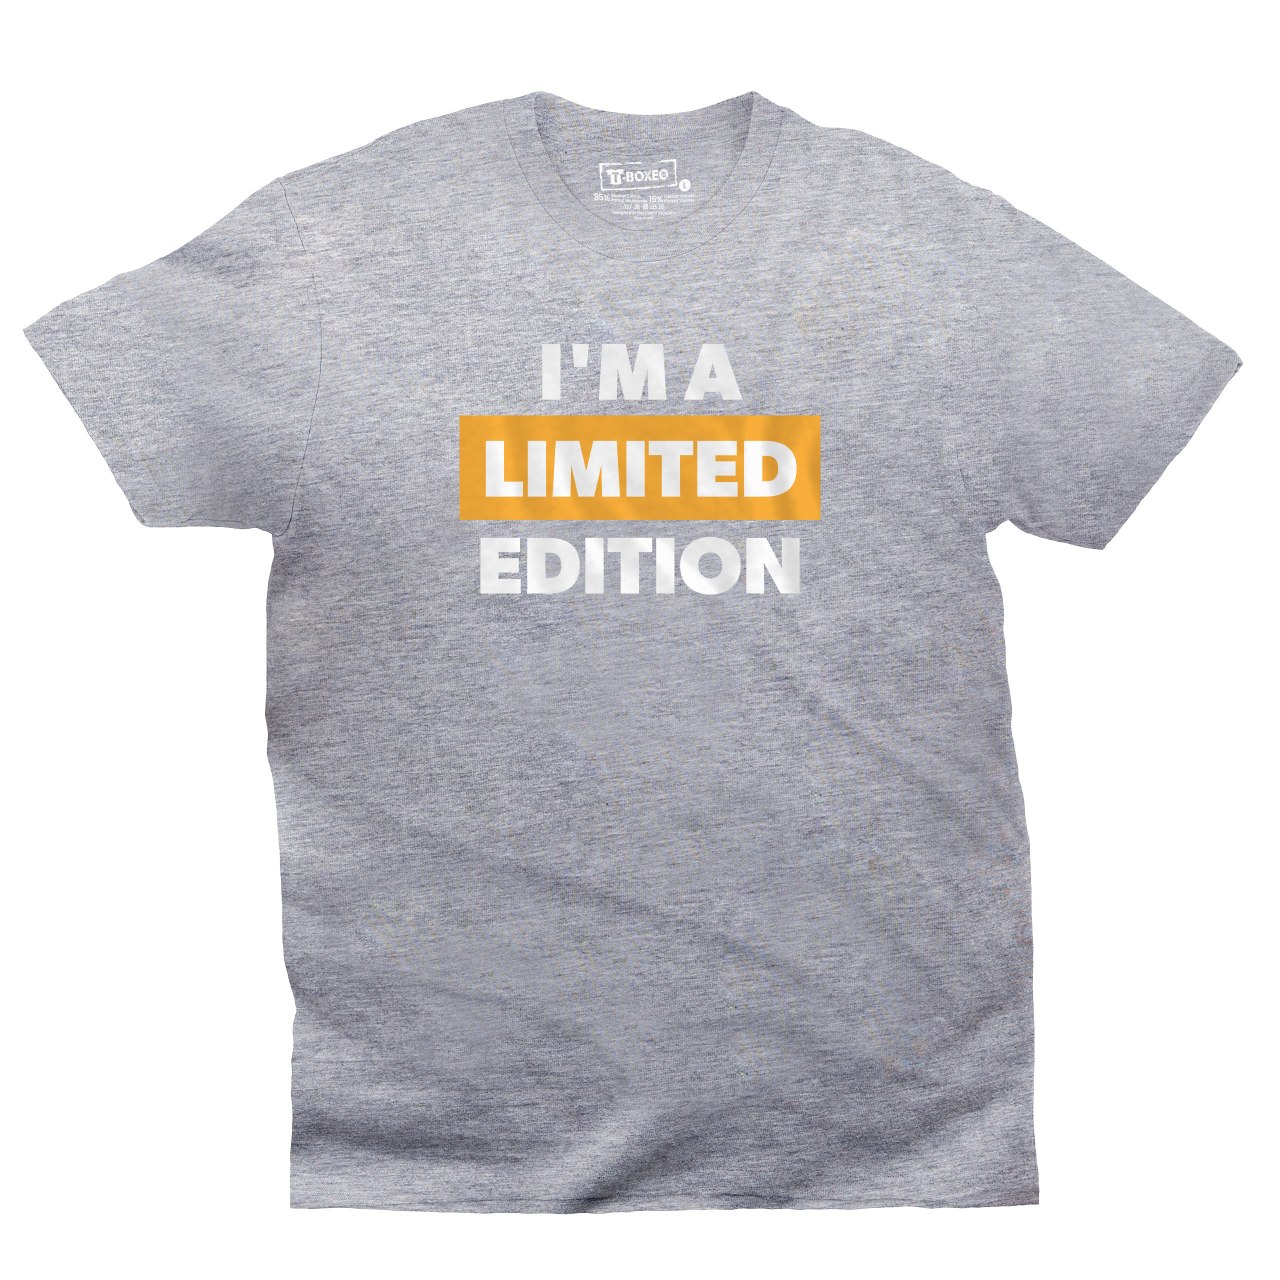 Pánské tričko s potiskem “Jsem limitovaná edice”